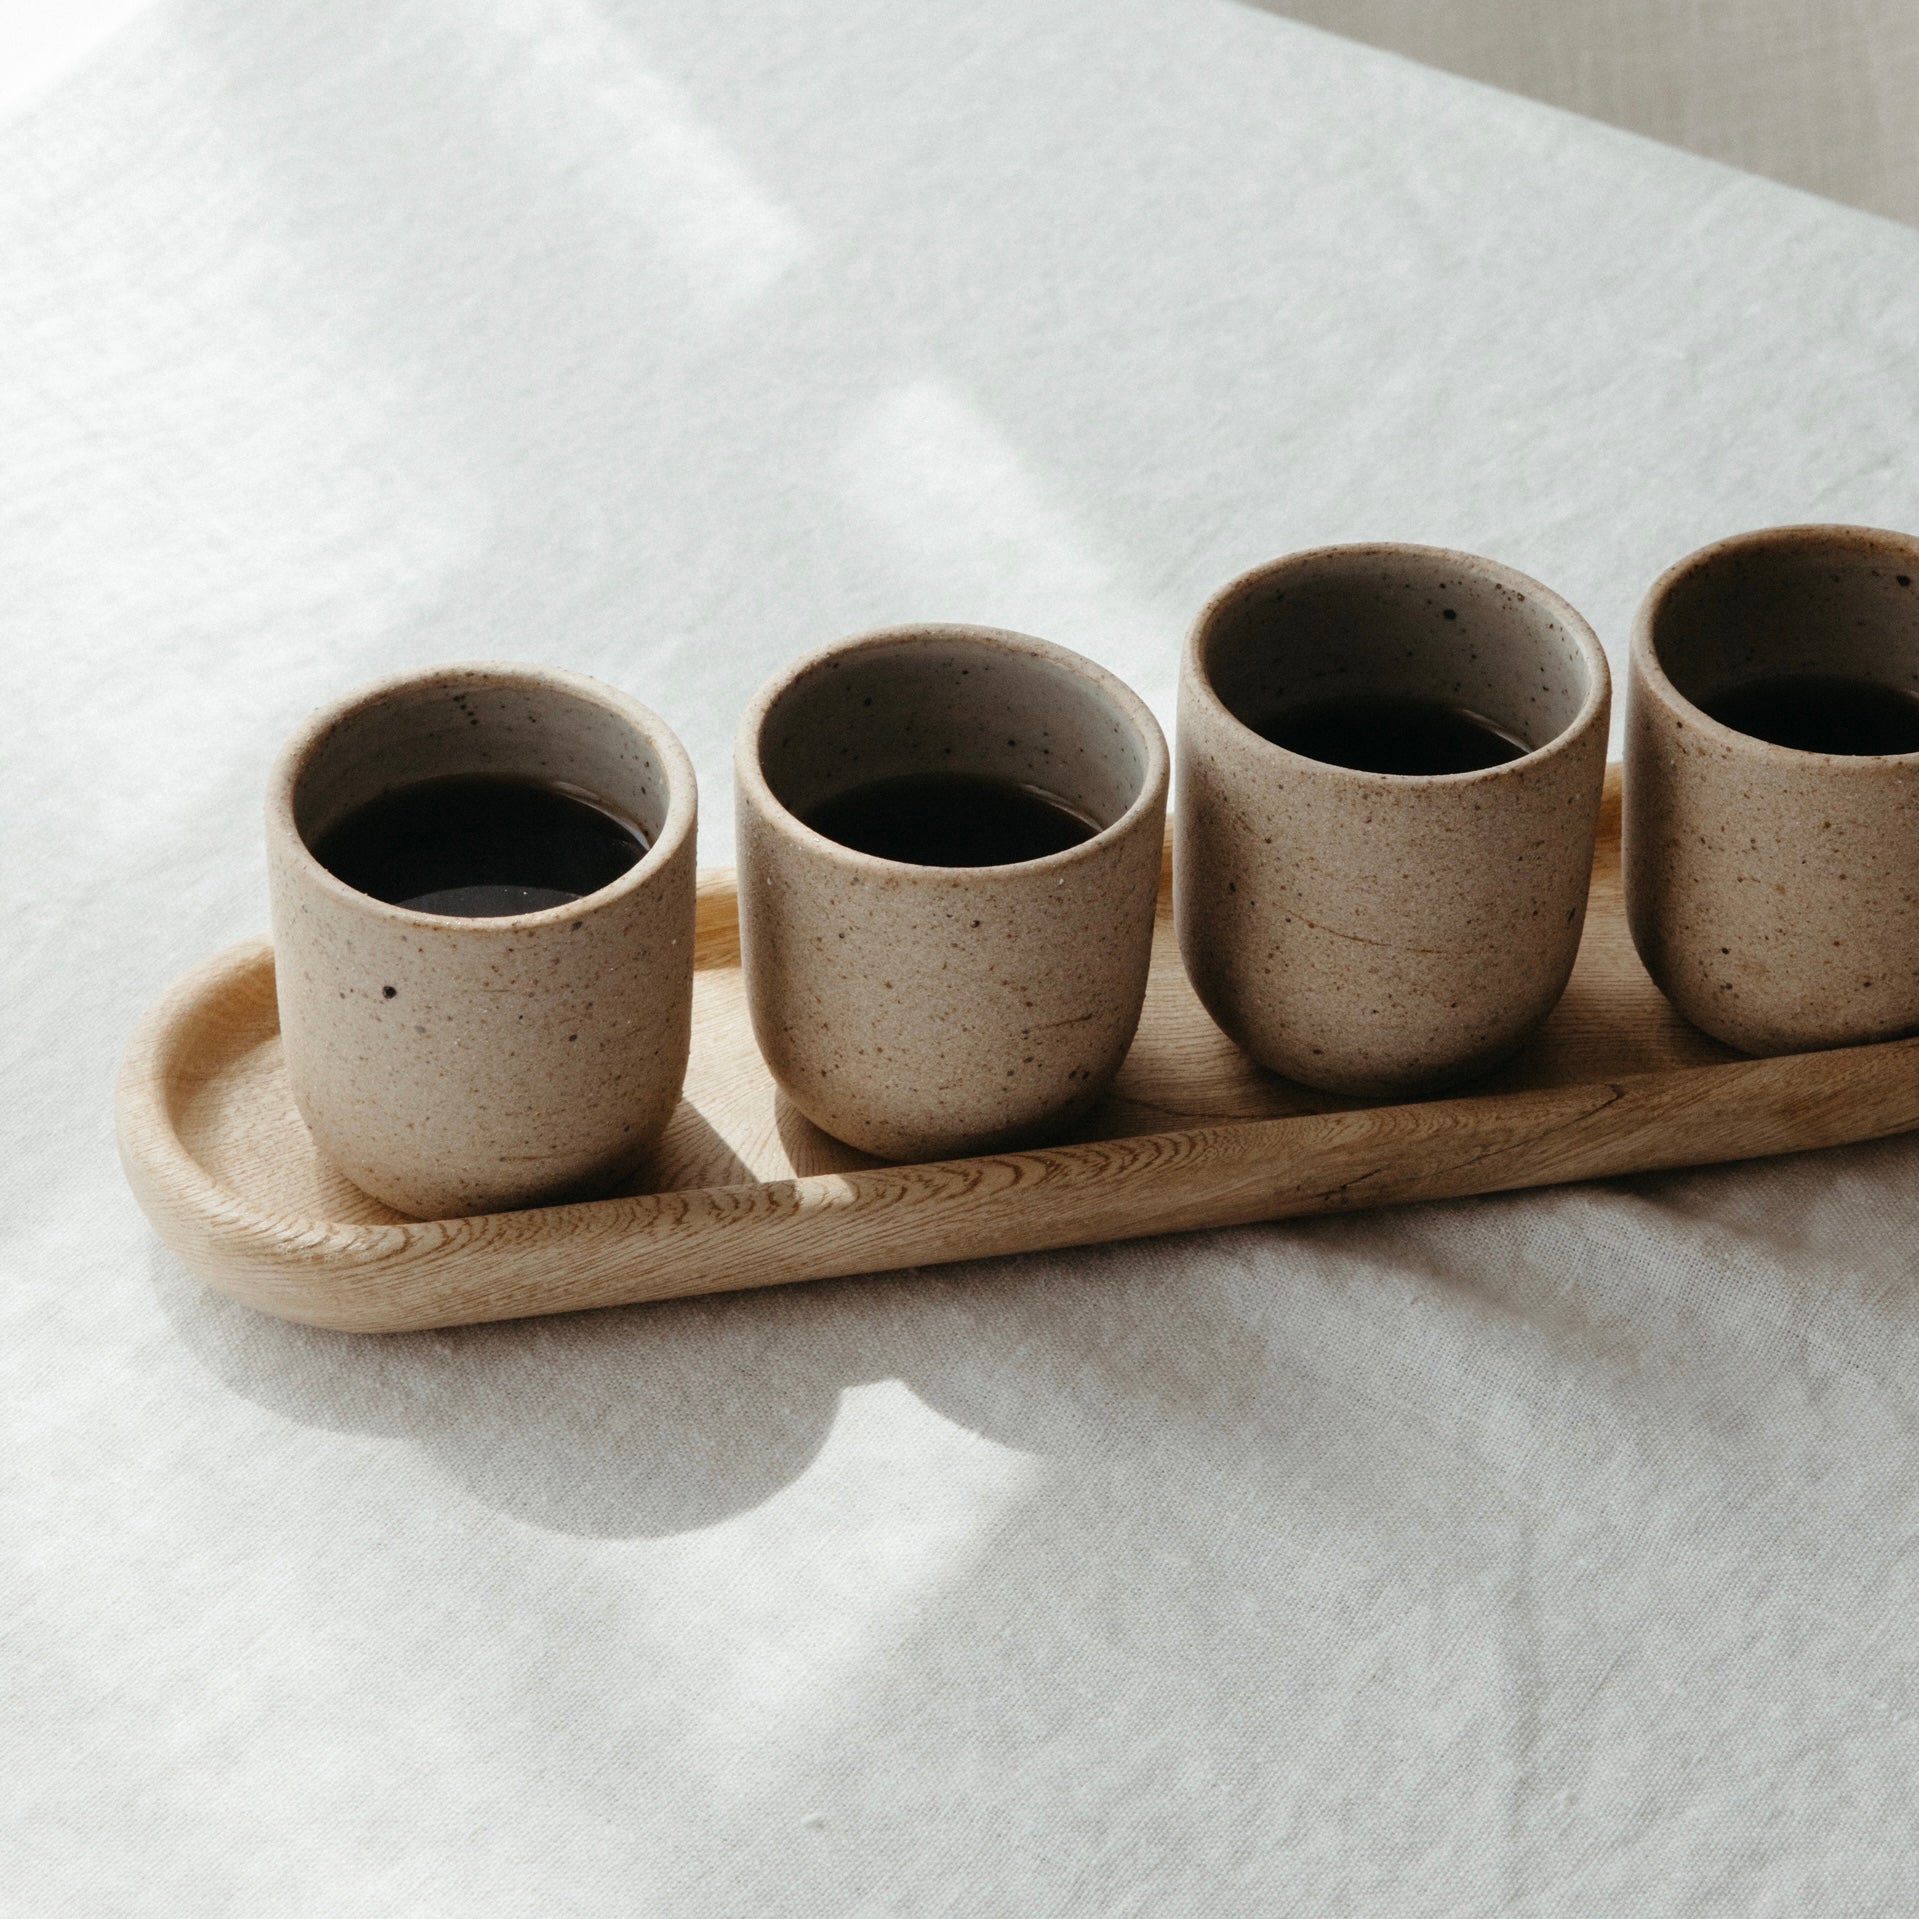 Bene Casa - Ceramic 9 Piece Espresso Set Including Metal Stand - 4 Espresso  Cups (3oz) and 4 Saucers - Stain Resistant Glaze